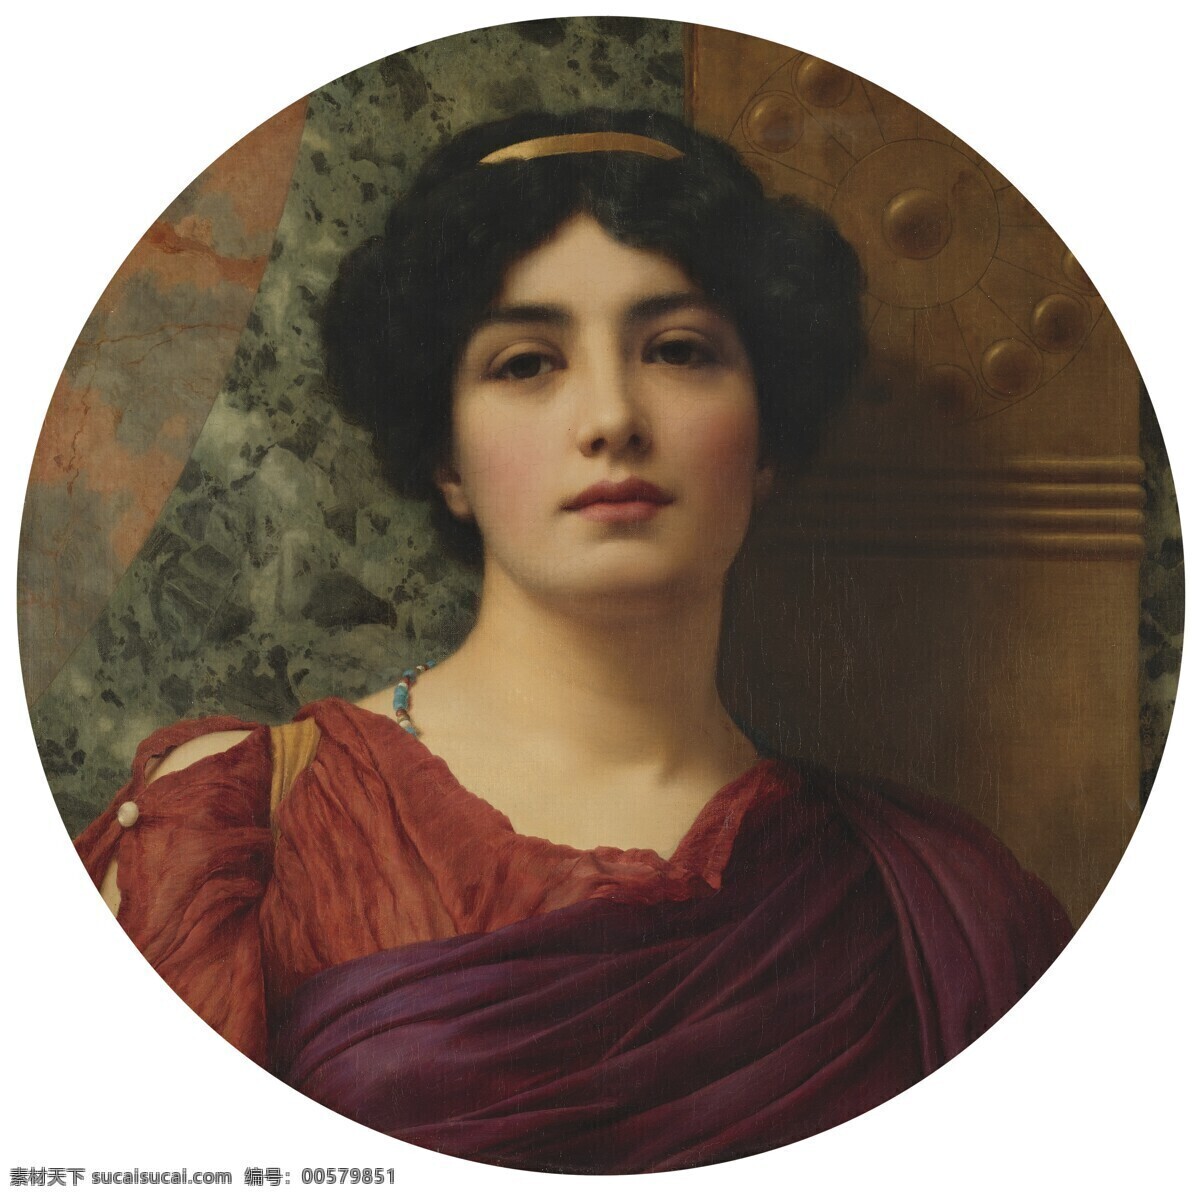 人物肖像画 英国画家 贵族 贵妇 半身画像 新 浪漫主义 画派 19世纪油画 油画 绘画书法 文化艺术